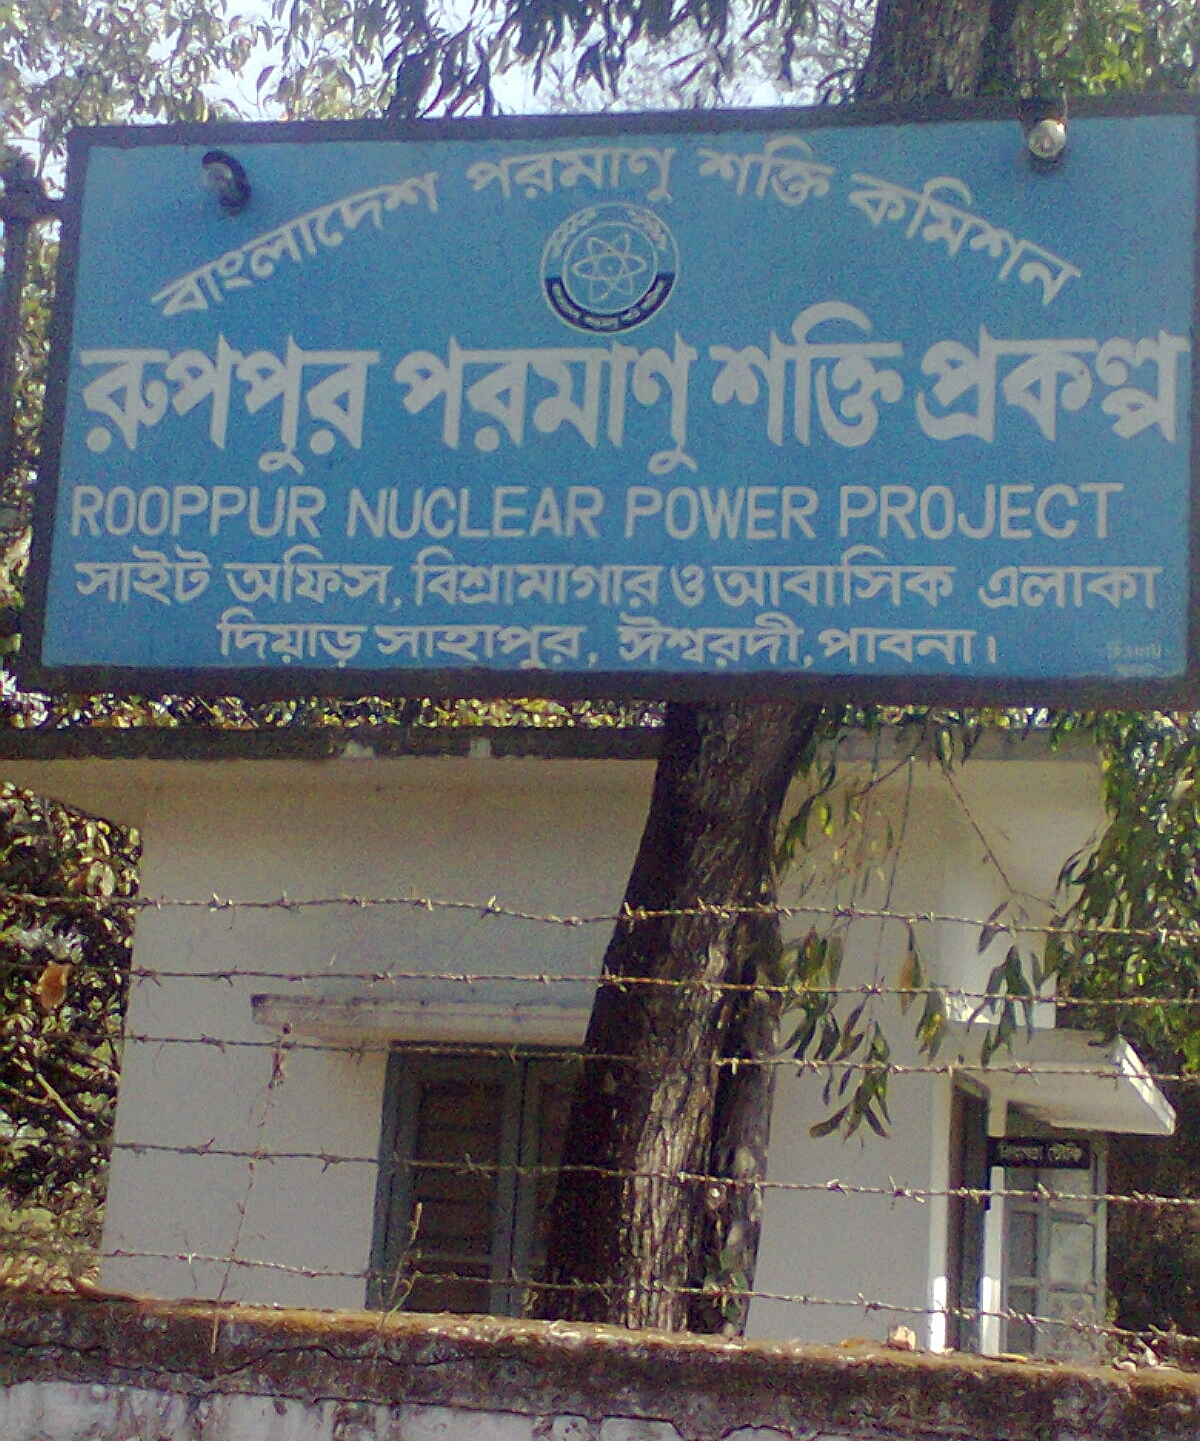 Panneau de chantier du projet de la centrale nucléaire de Rooppur (Image : Wikipedia - Masum-al-hasan, CC BY-SA 4.0 <https://creativecommons.org/licenses/by-sa/4.0>, via Wikimedia Commons)